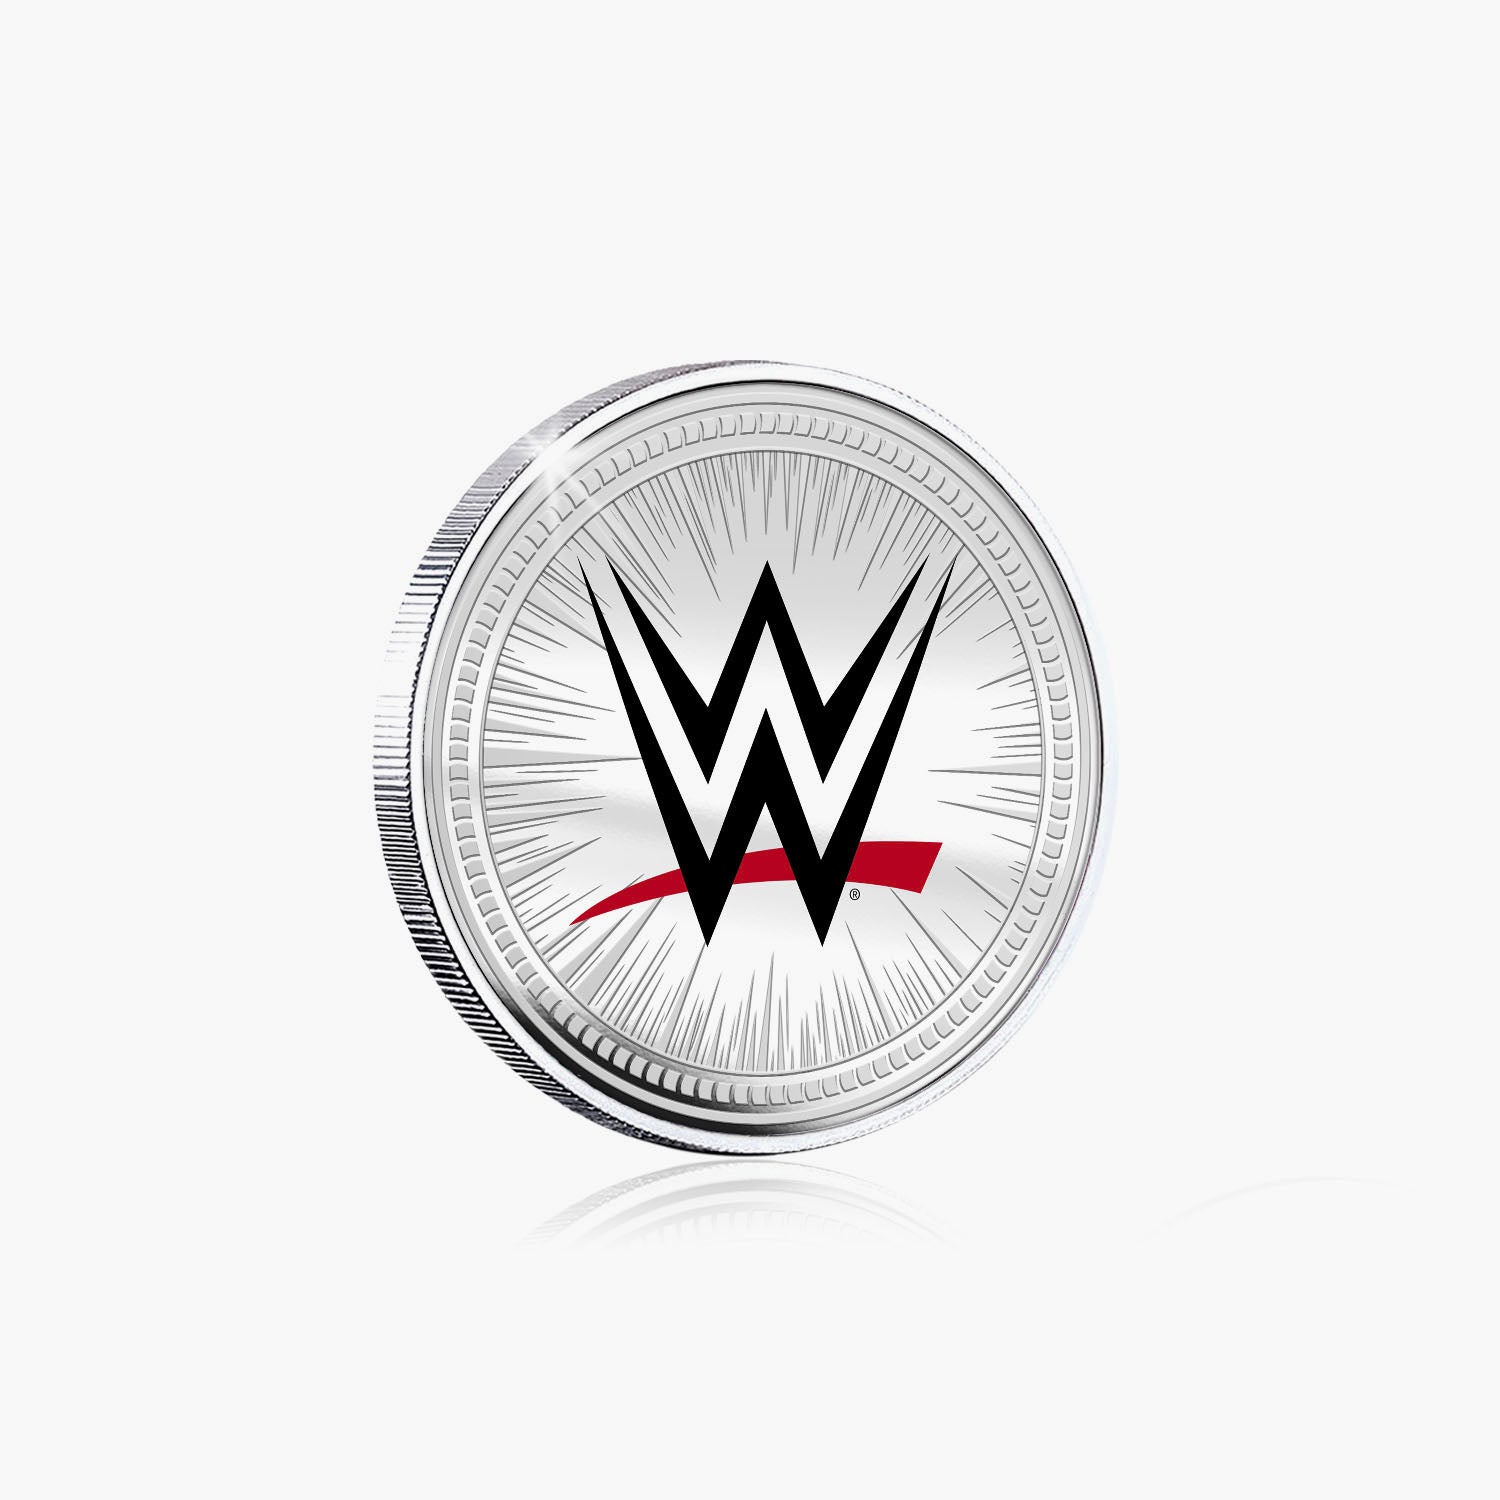 Collection commémorative WWE – Stone Cold Steve Austin – Commémorative plaquée argent 32 mm